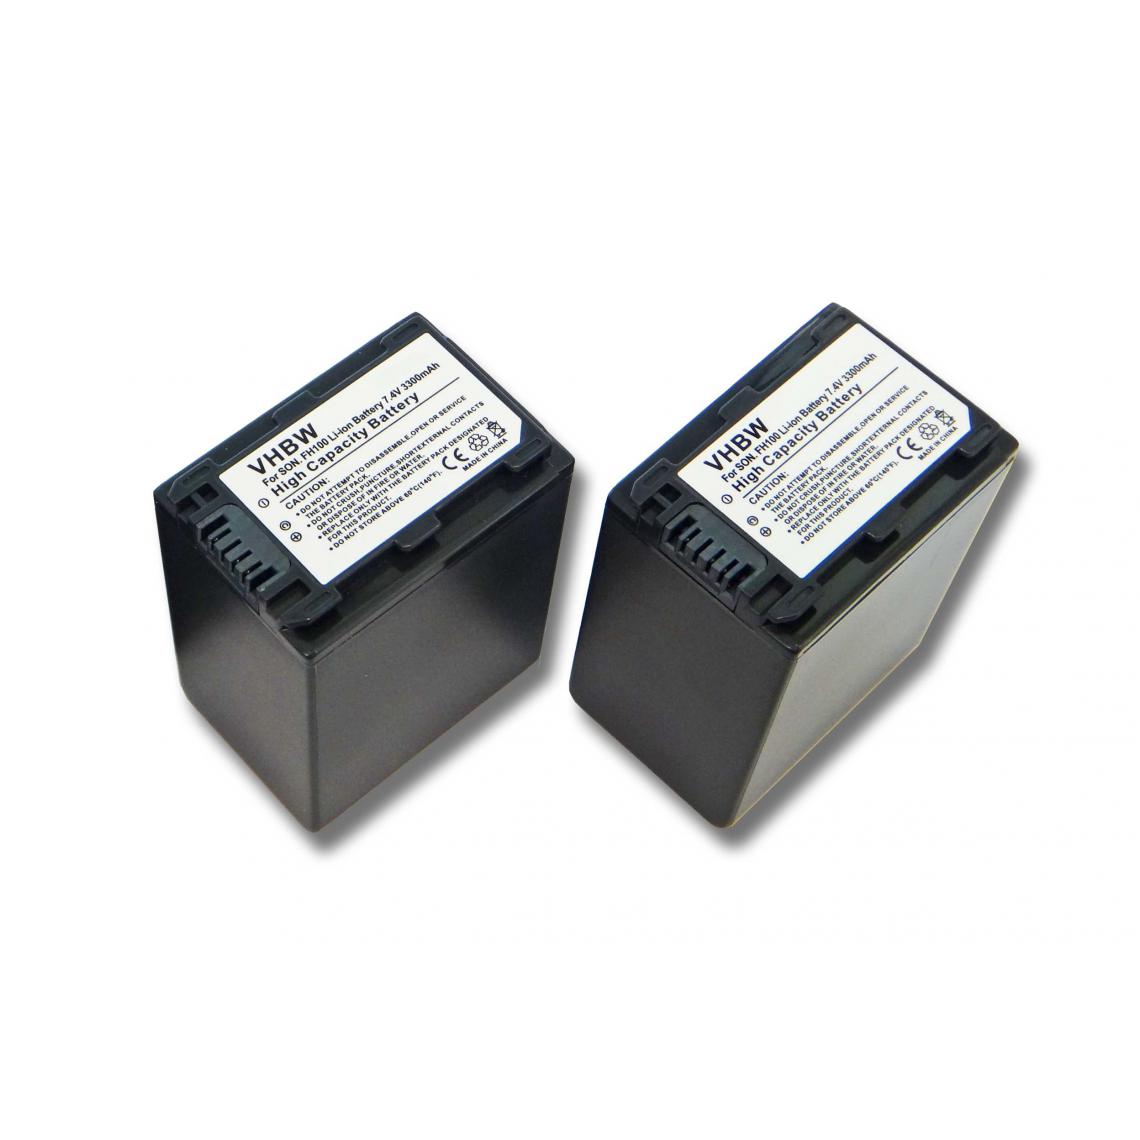 Vhbw - vhbw 2x batterie compatible avec Sony HDR-HC7(E), HDR-HC9, HDR-HC9E, HDR-SR10, HDR-SR10E caméra vidéo (3300mAh, 7,4V, Li-ion) avec puce d'information - Batterie Photo & Video